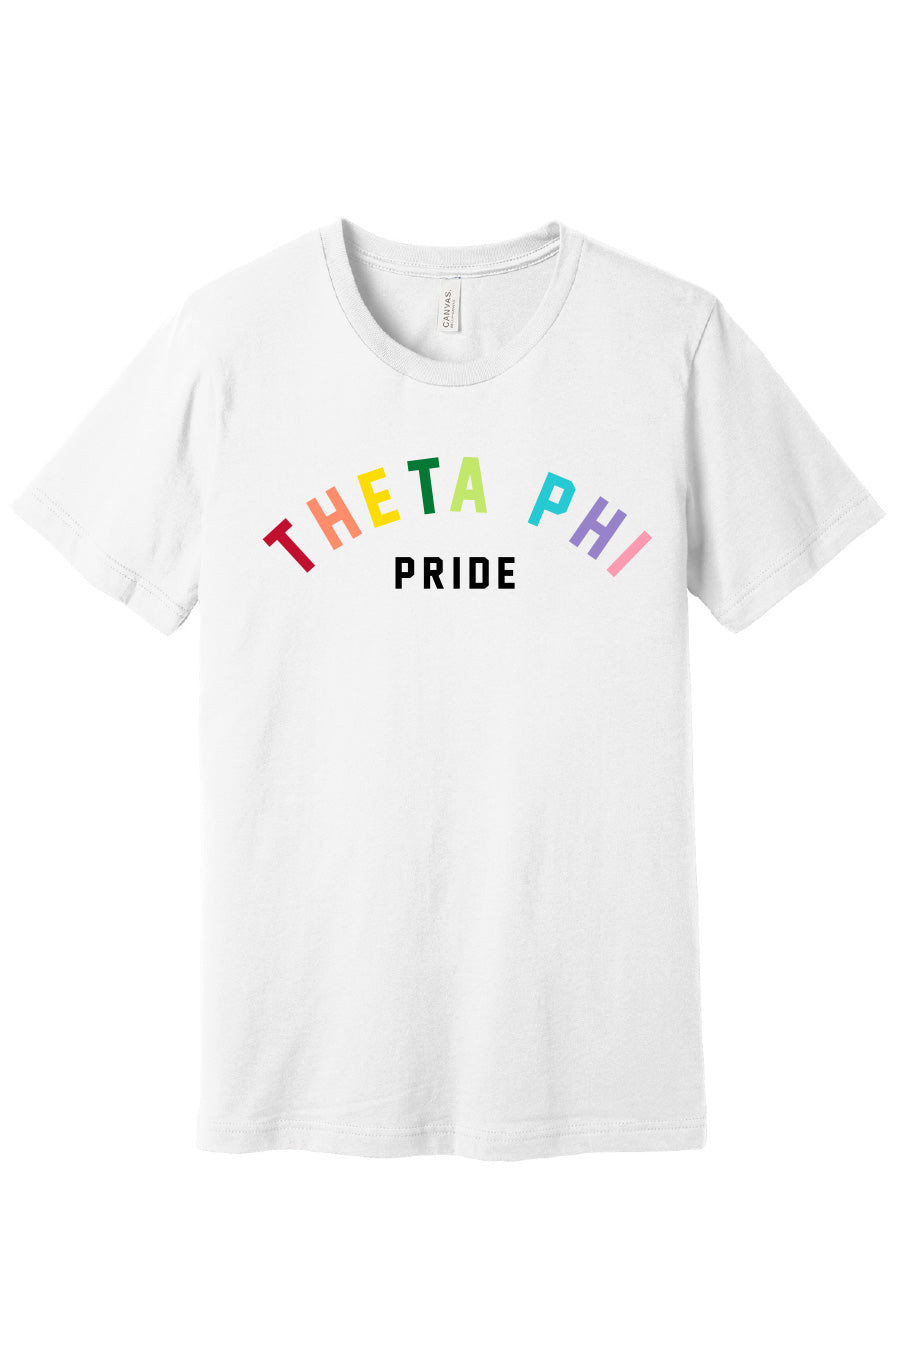 Theta Phi Pride Tee